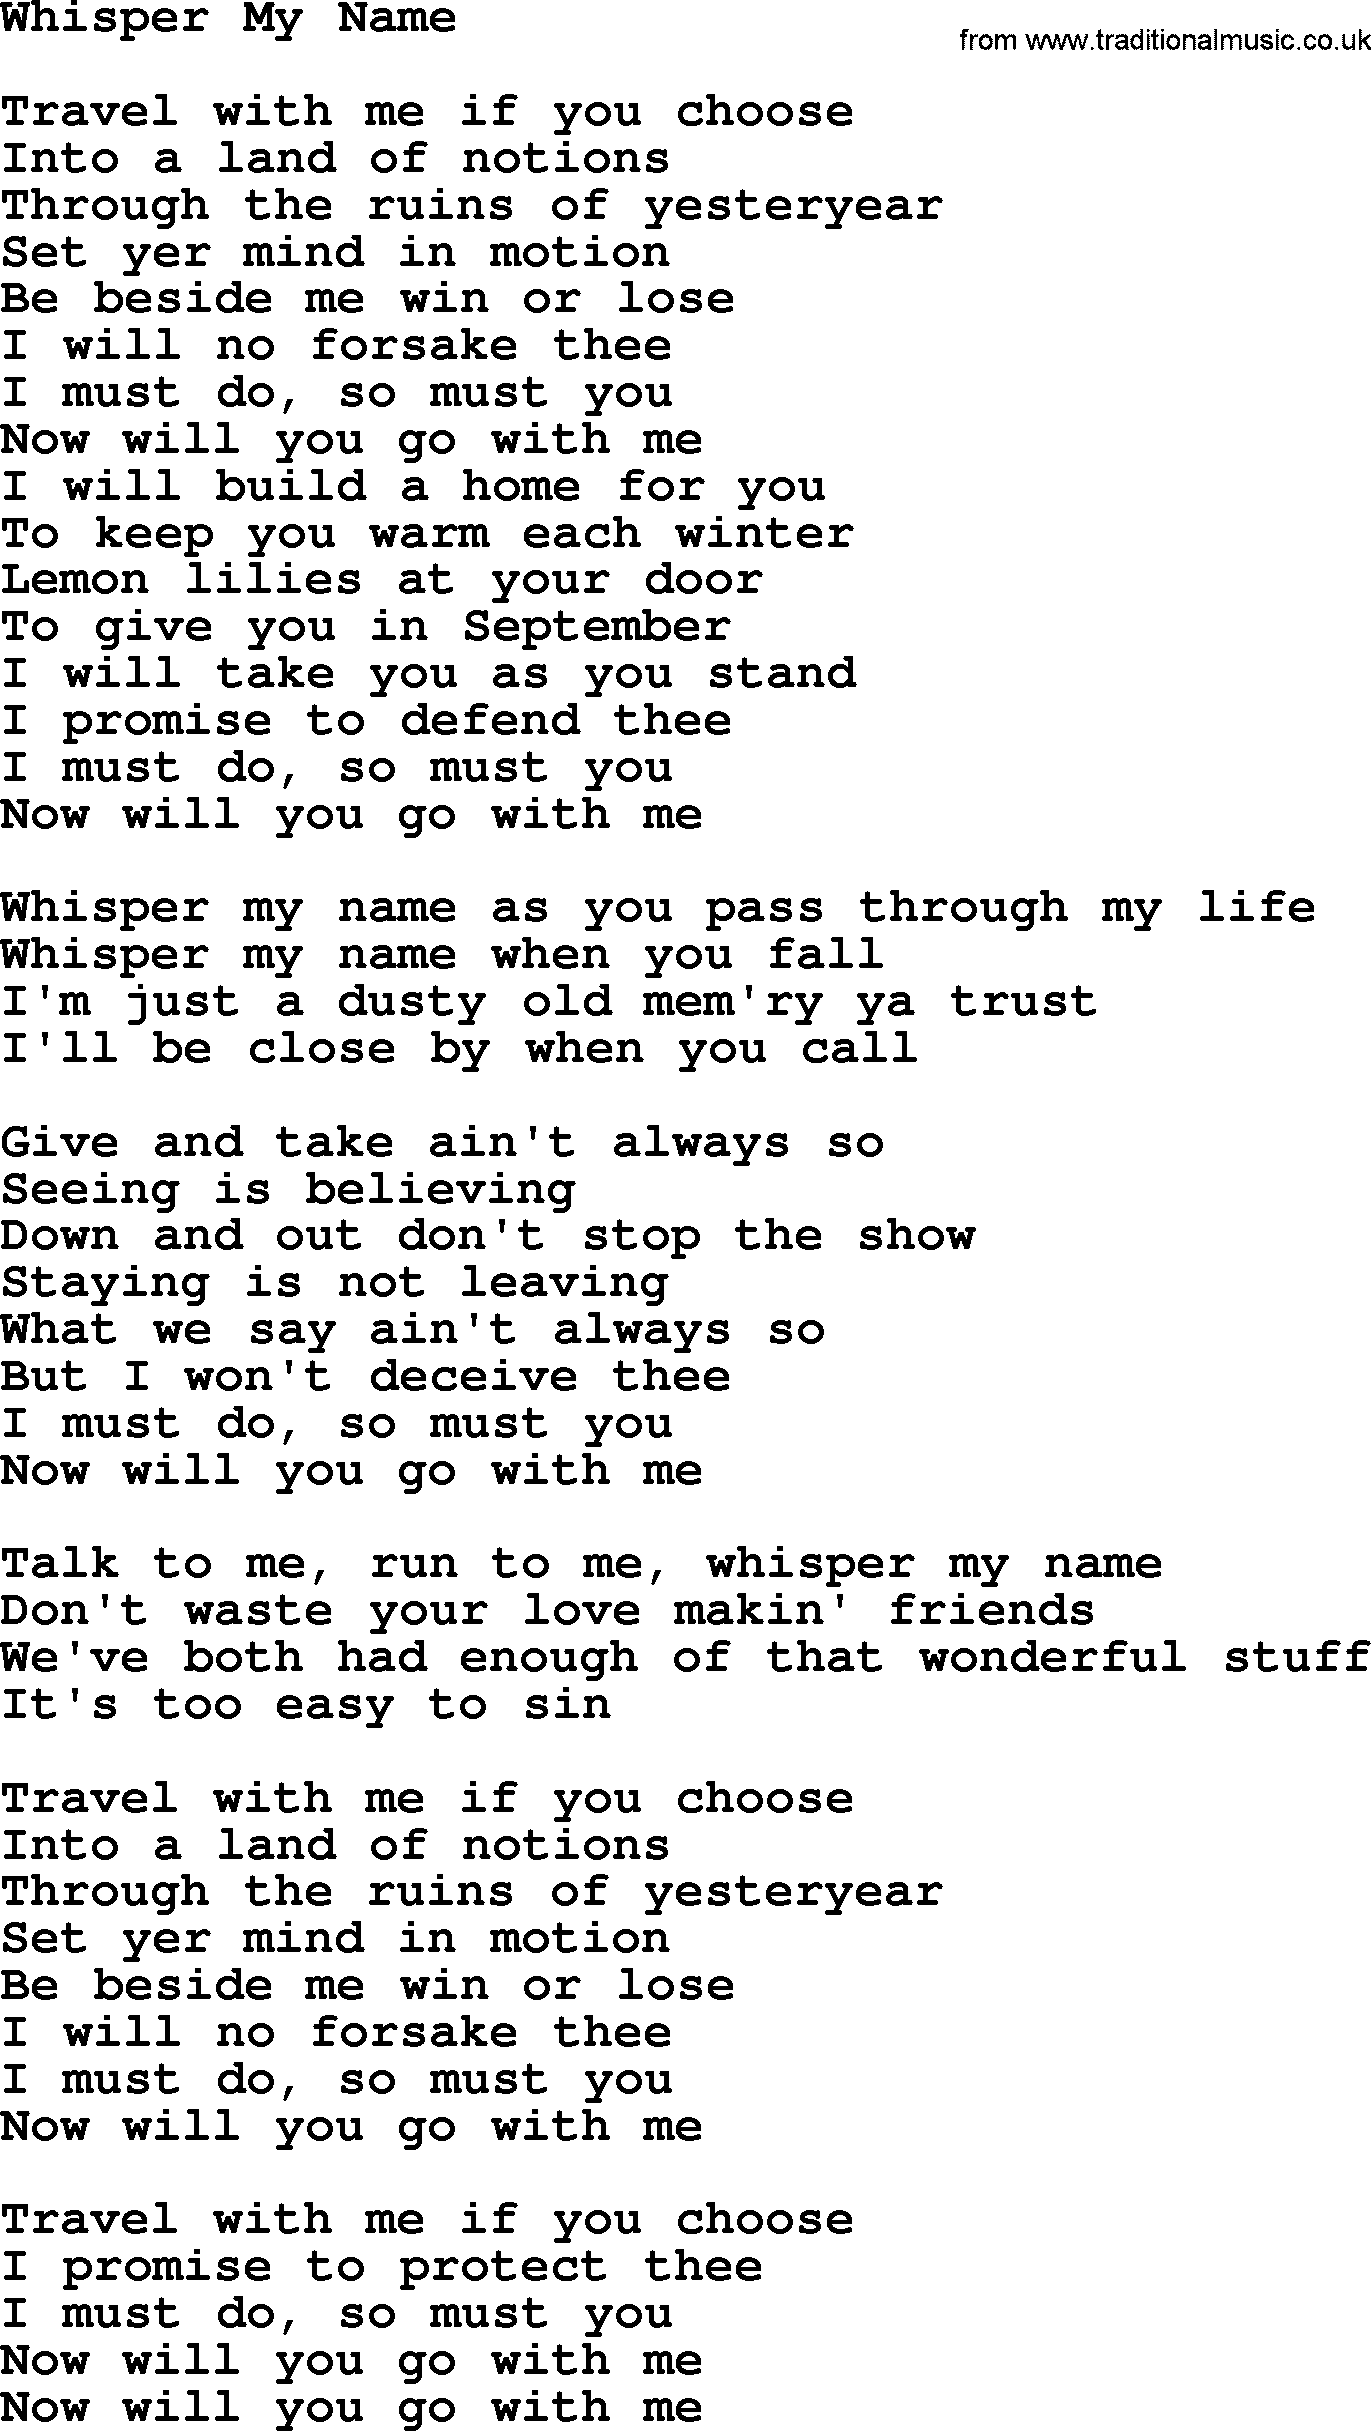 Gordon Lightfoot song Whisper My Name, lyrics